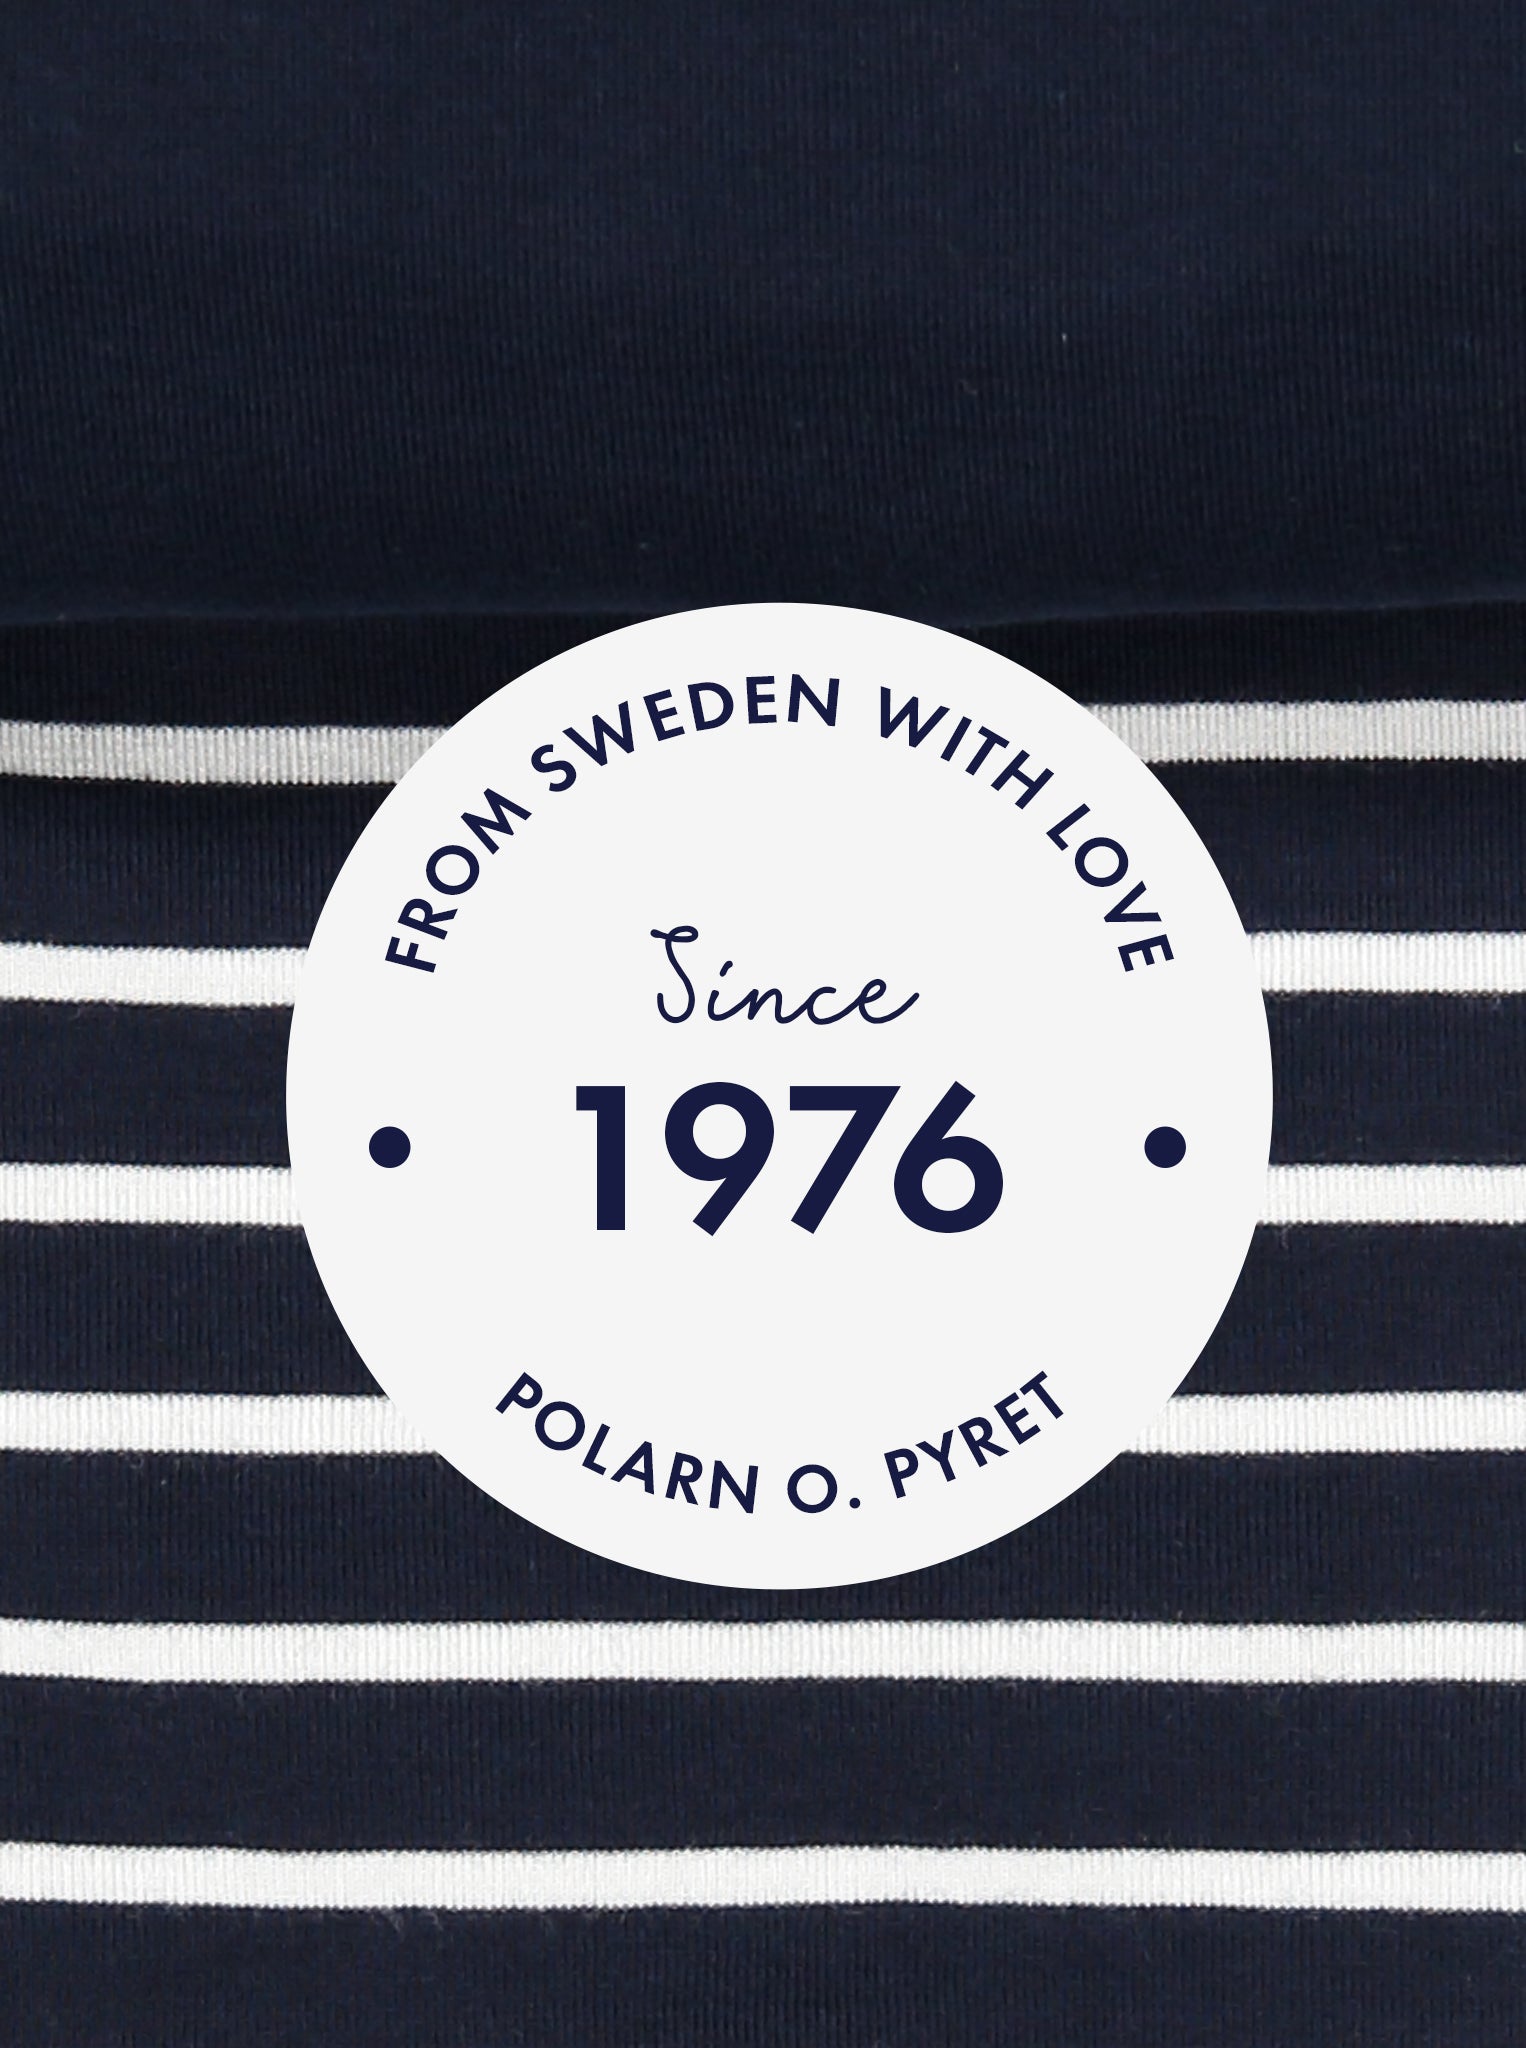 polarn o. pyret 1976 logo in navy and white stripe